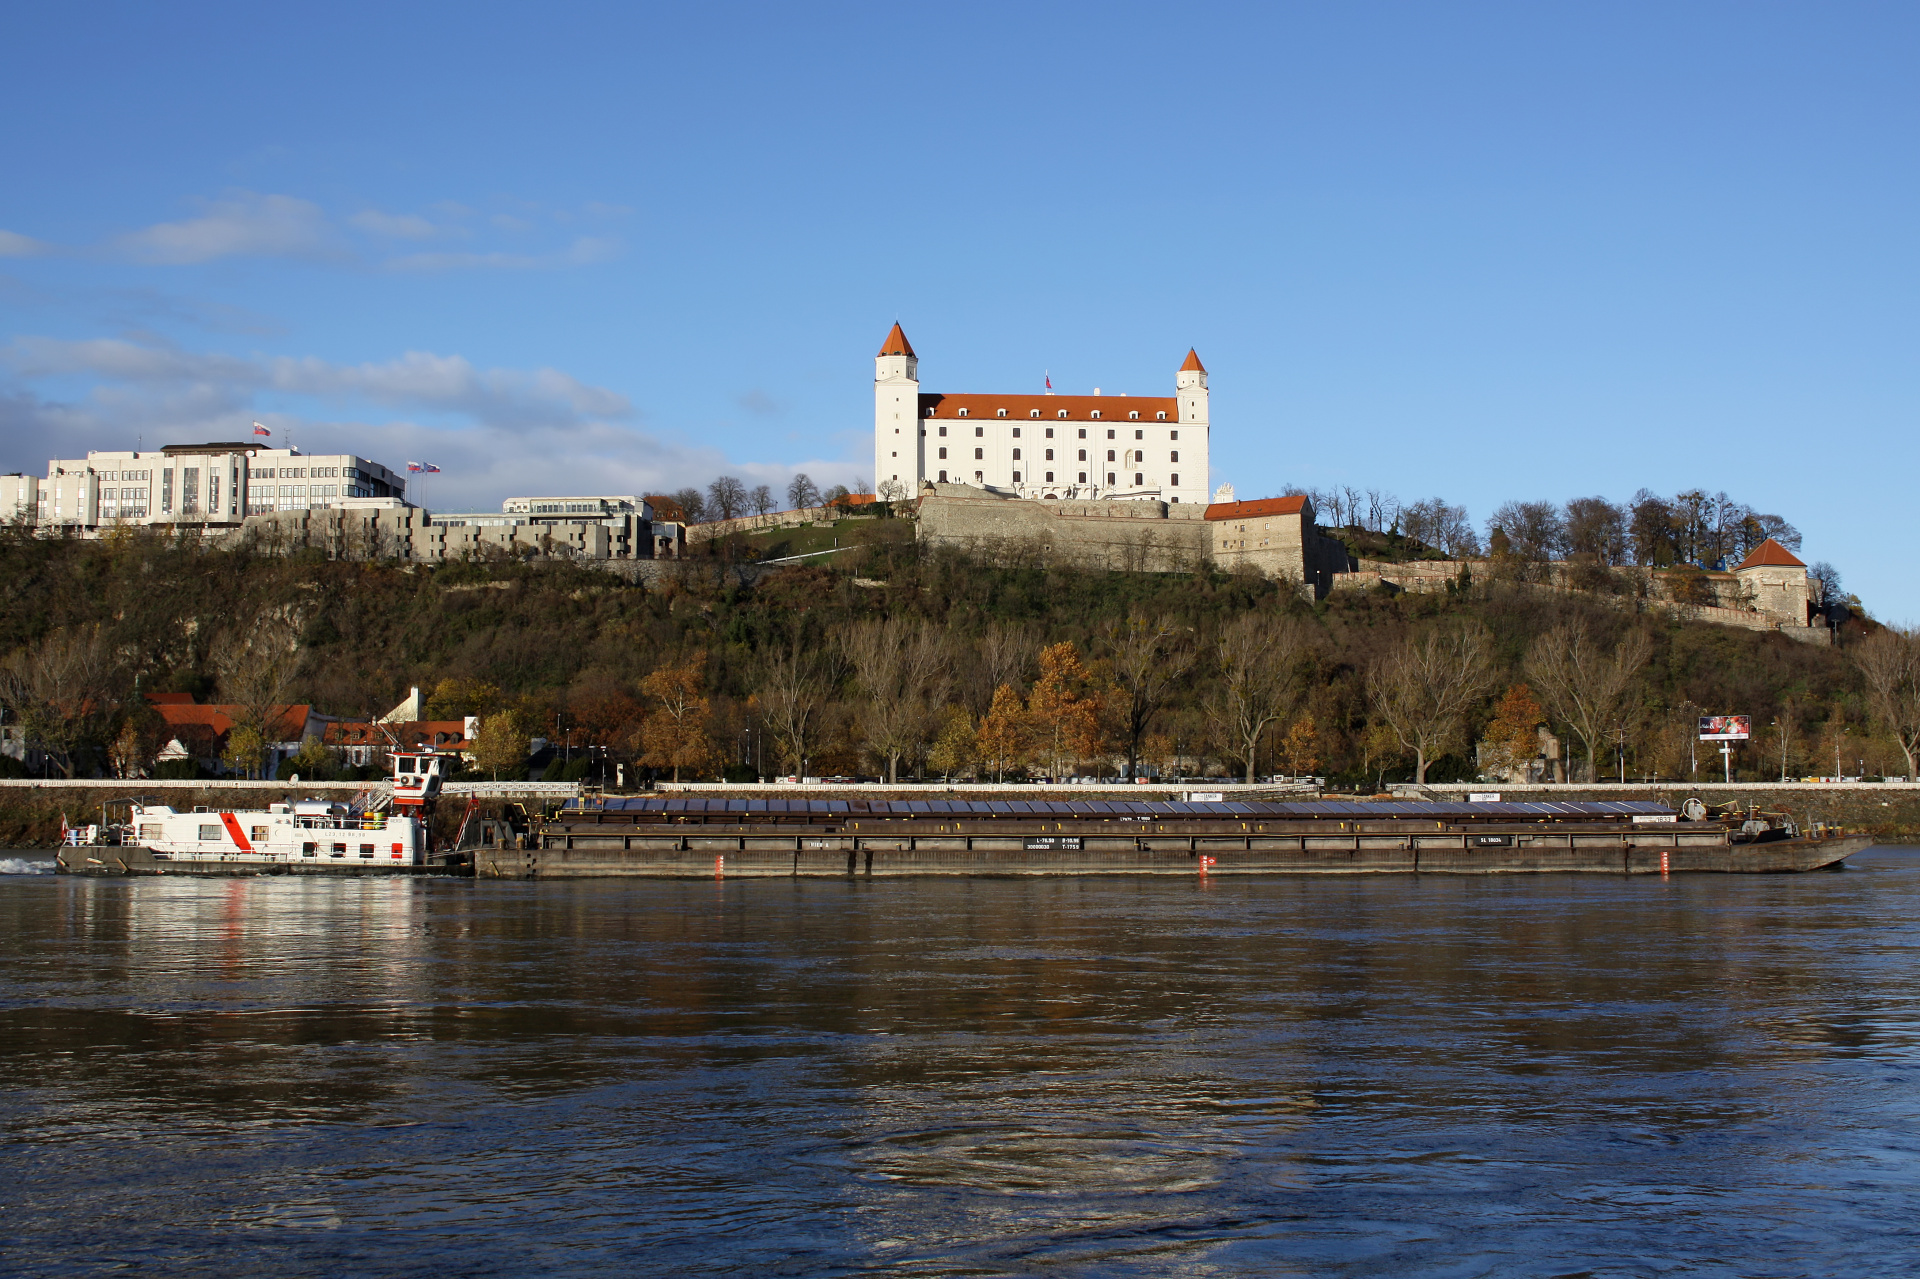 Dunaj i Wzgórze Zamkowe (Podróże » Bratysława » Miasto za dnia)